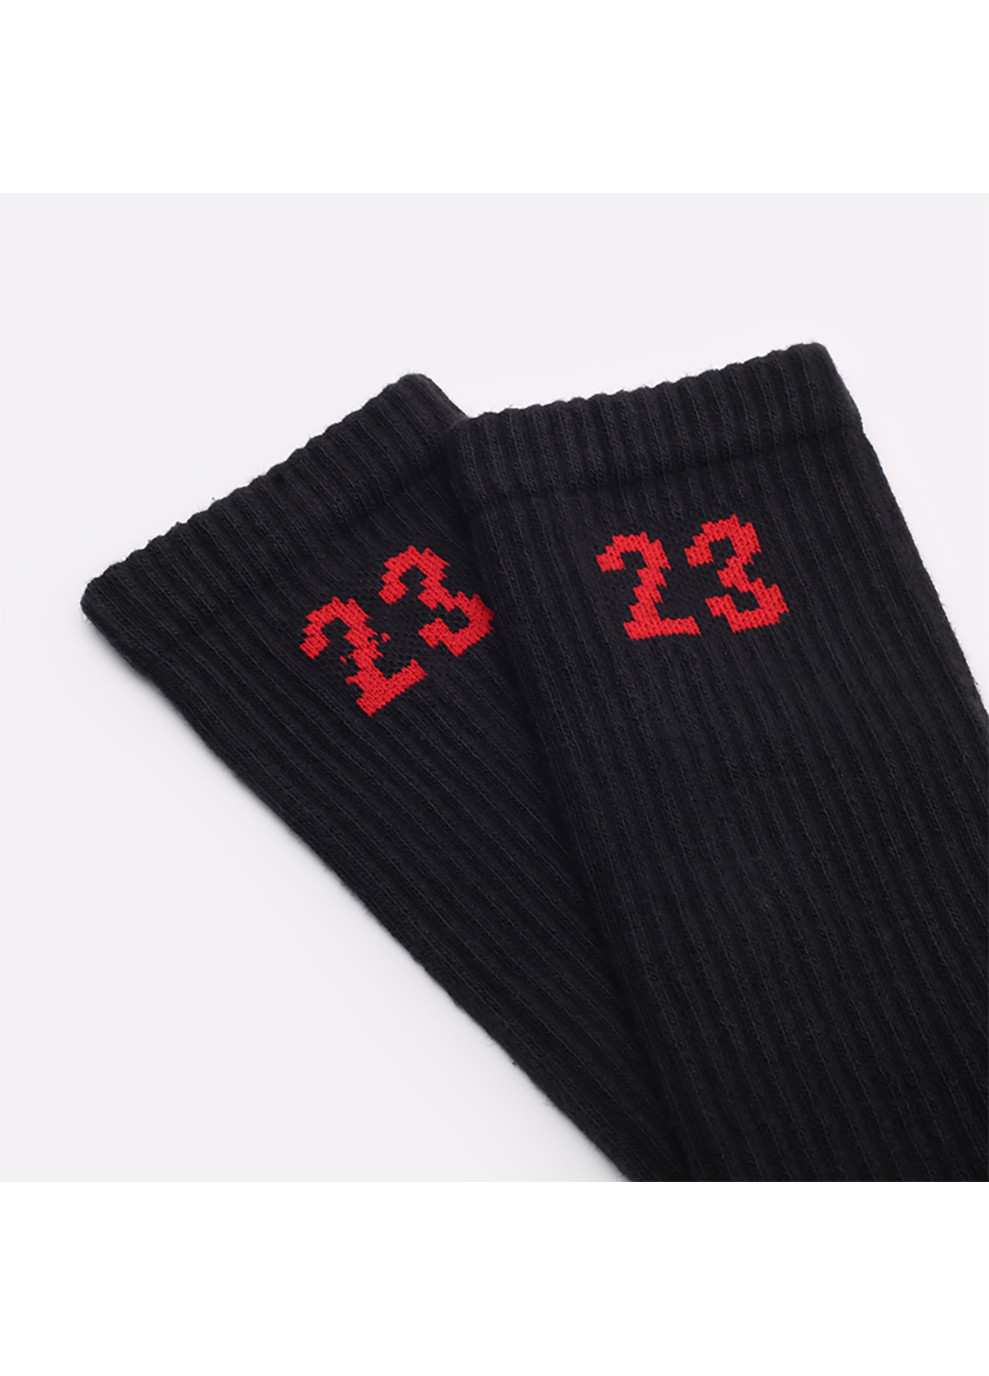 Носки Jordan Essential Crew 3-pack black/red — DA5718-011 Nike (253684006)